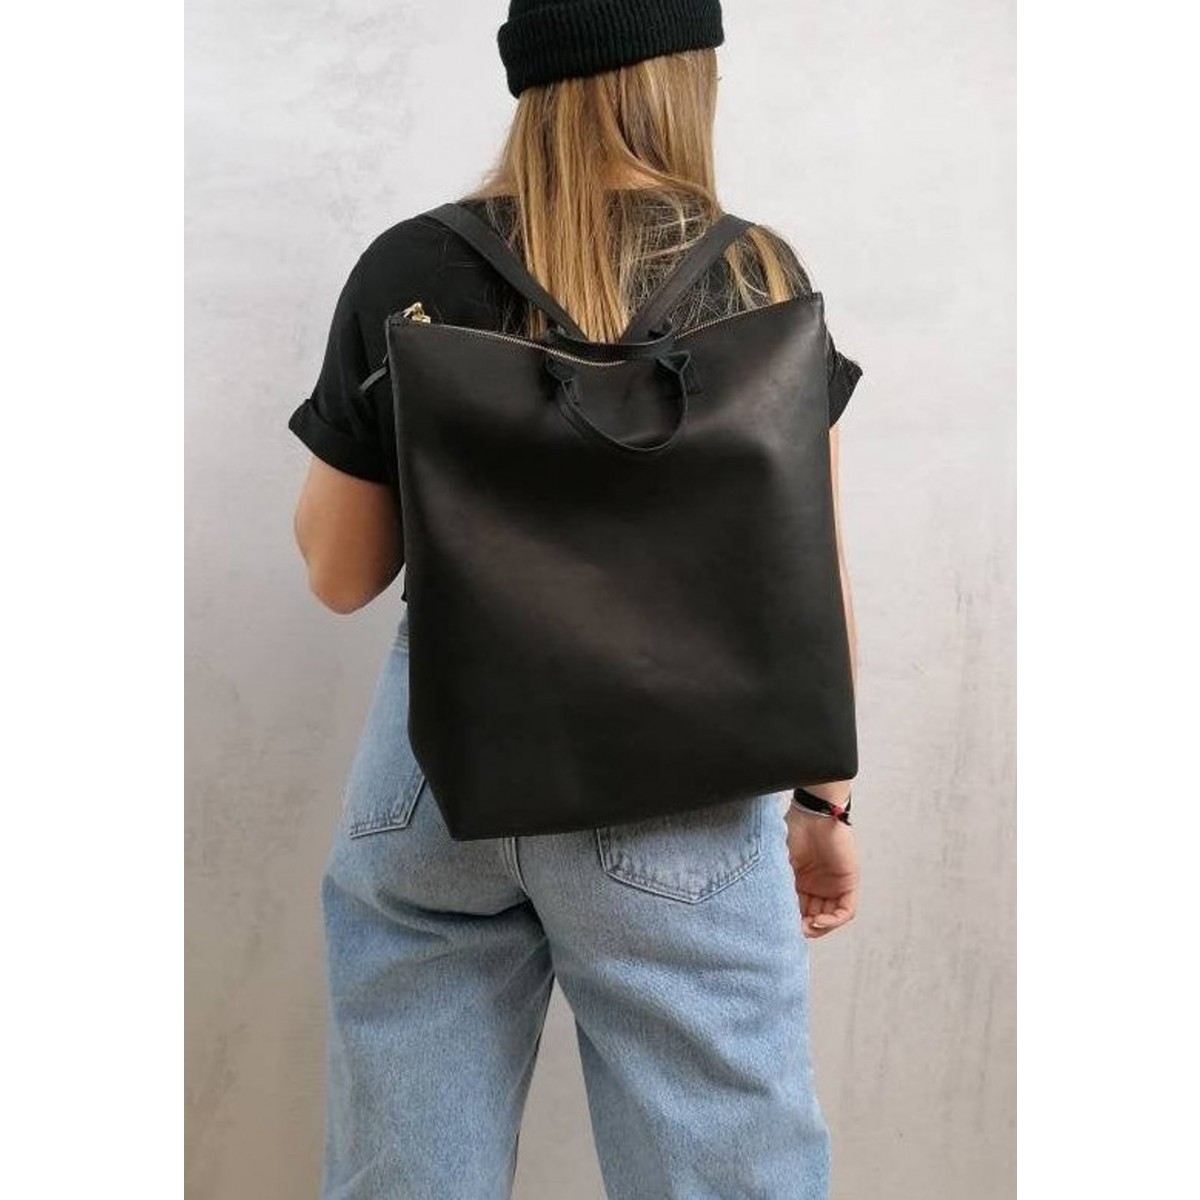 BSAITE Minimalistischer Rucksack / Backpack / schwarz / Echt Leder